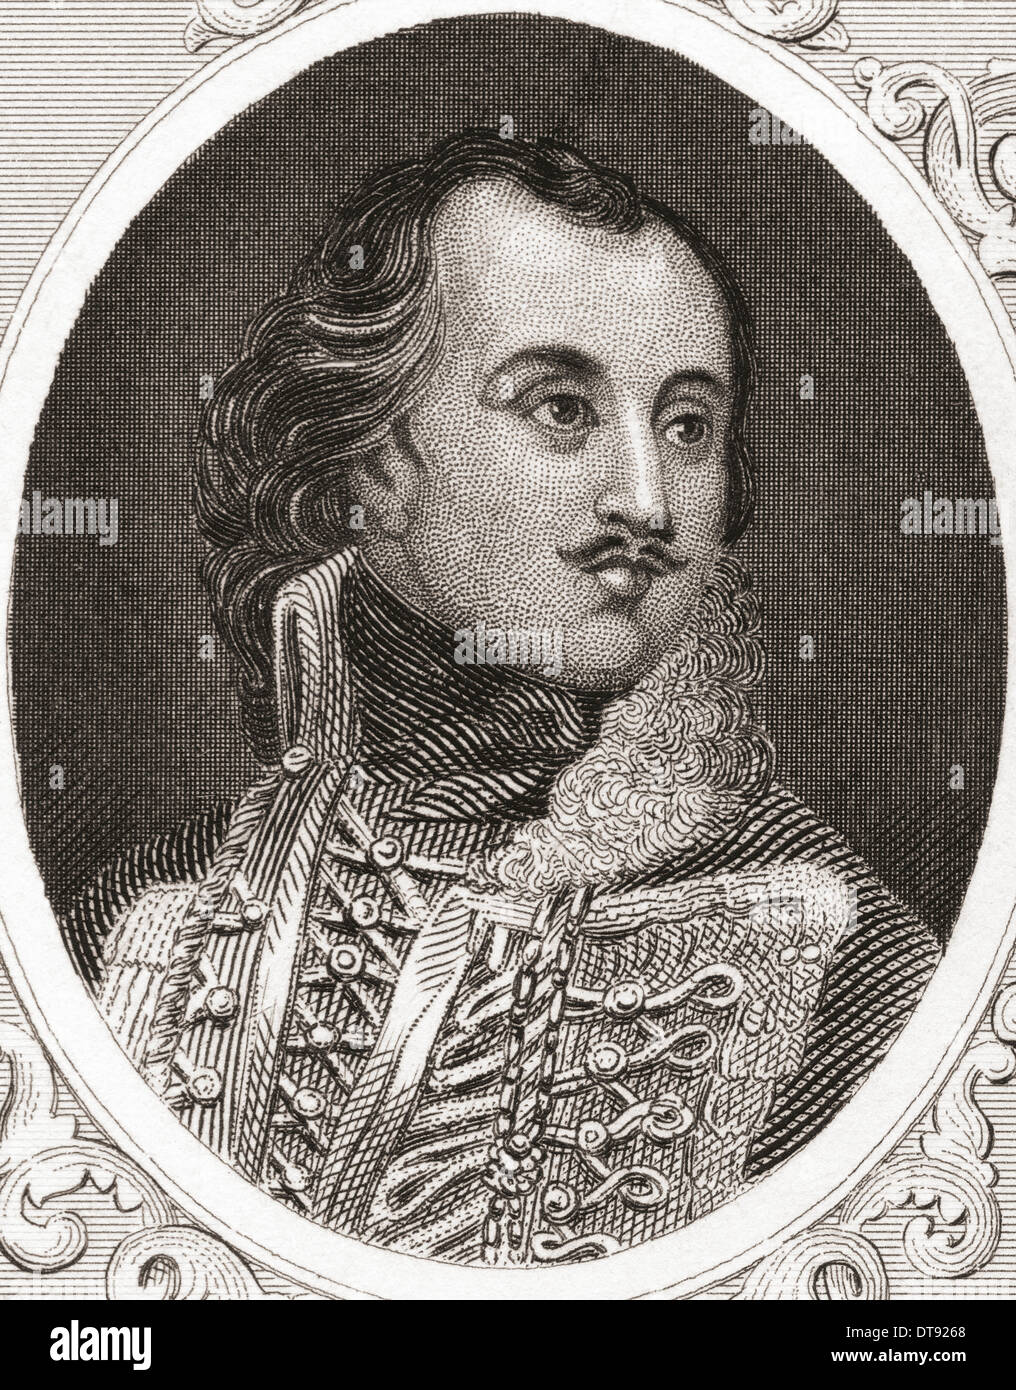 Kazimierz  Michał Wacław Wiktor Pułaski, aka Casimir Pulaski, 1745-1779. Polish nobleman and soldier. Stock Photo